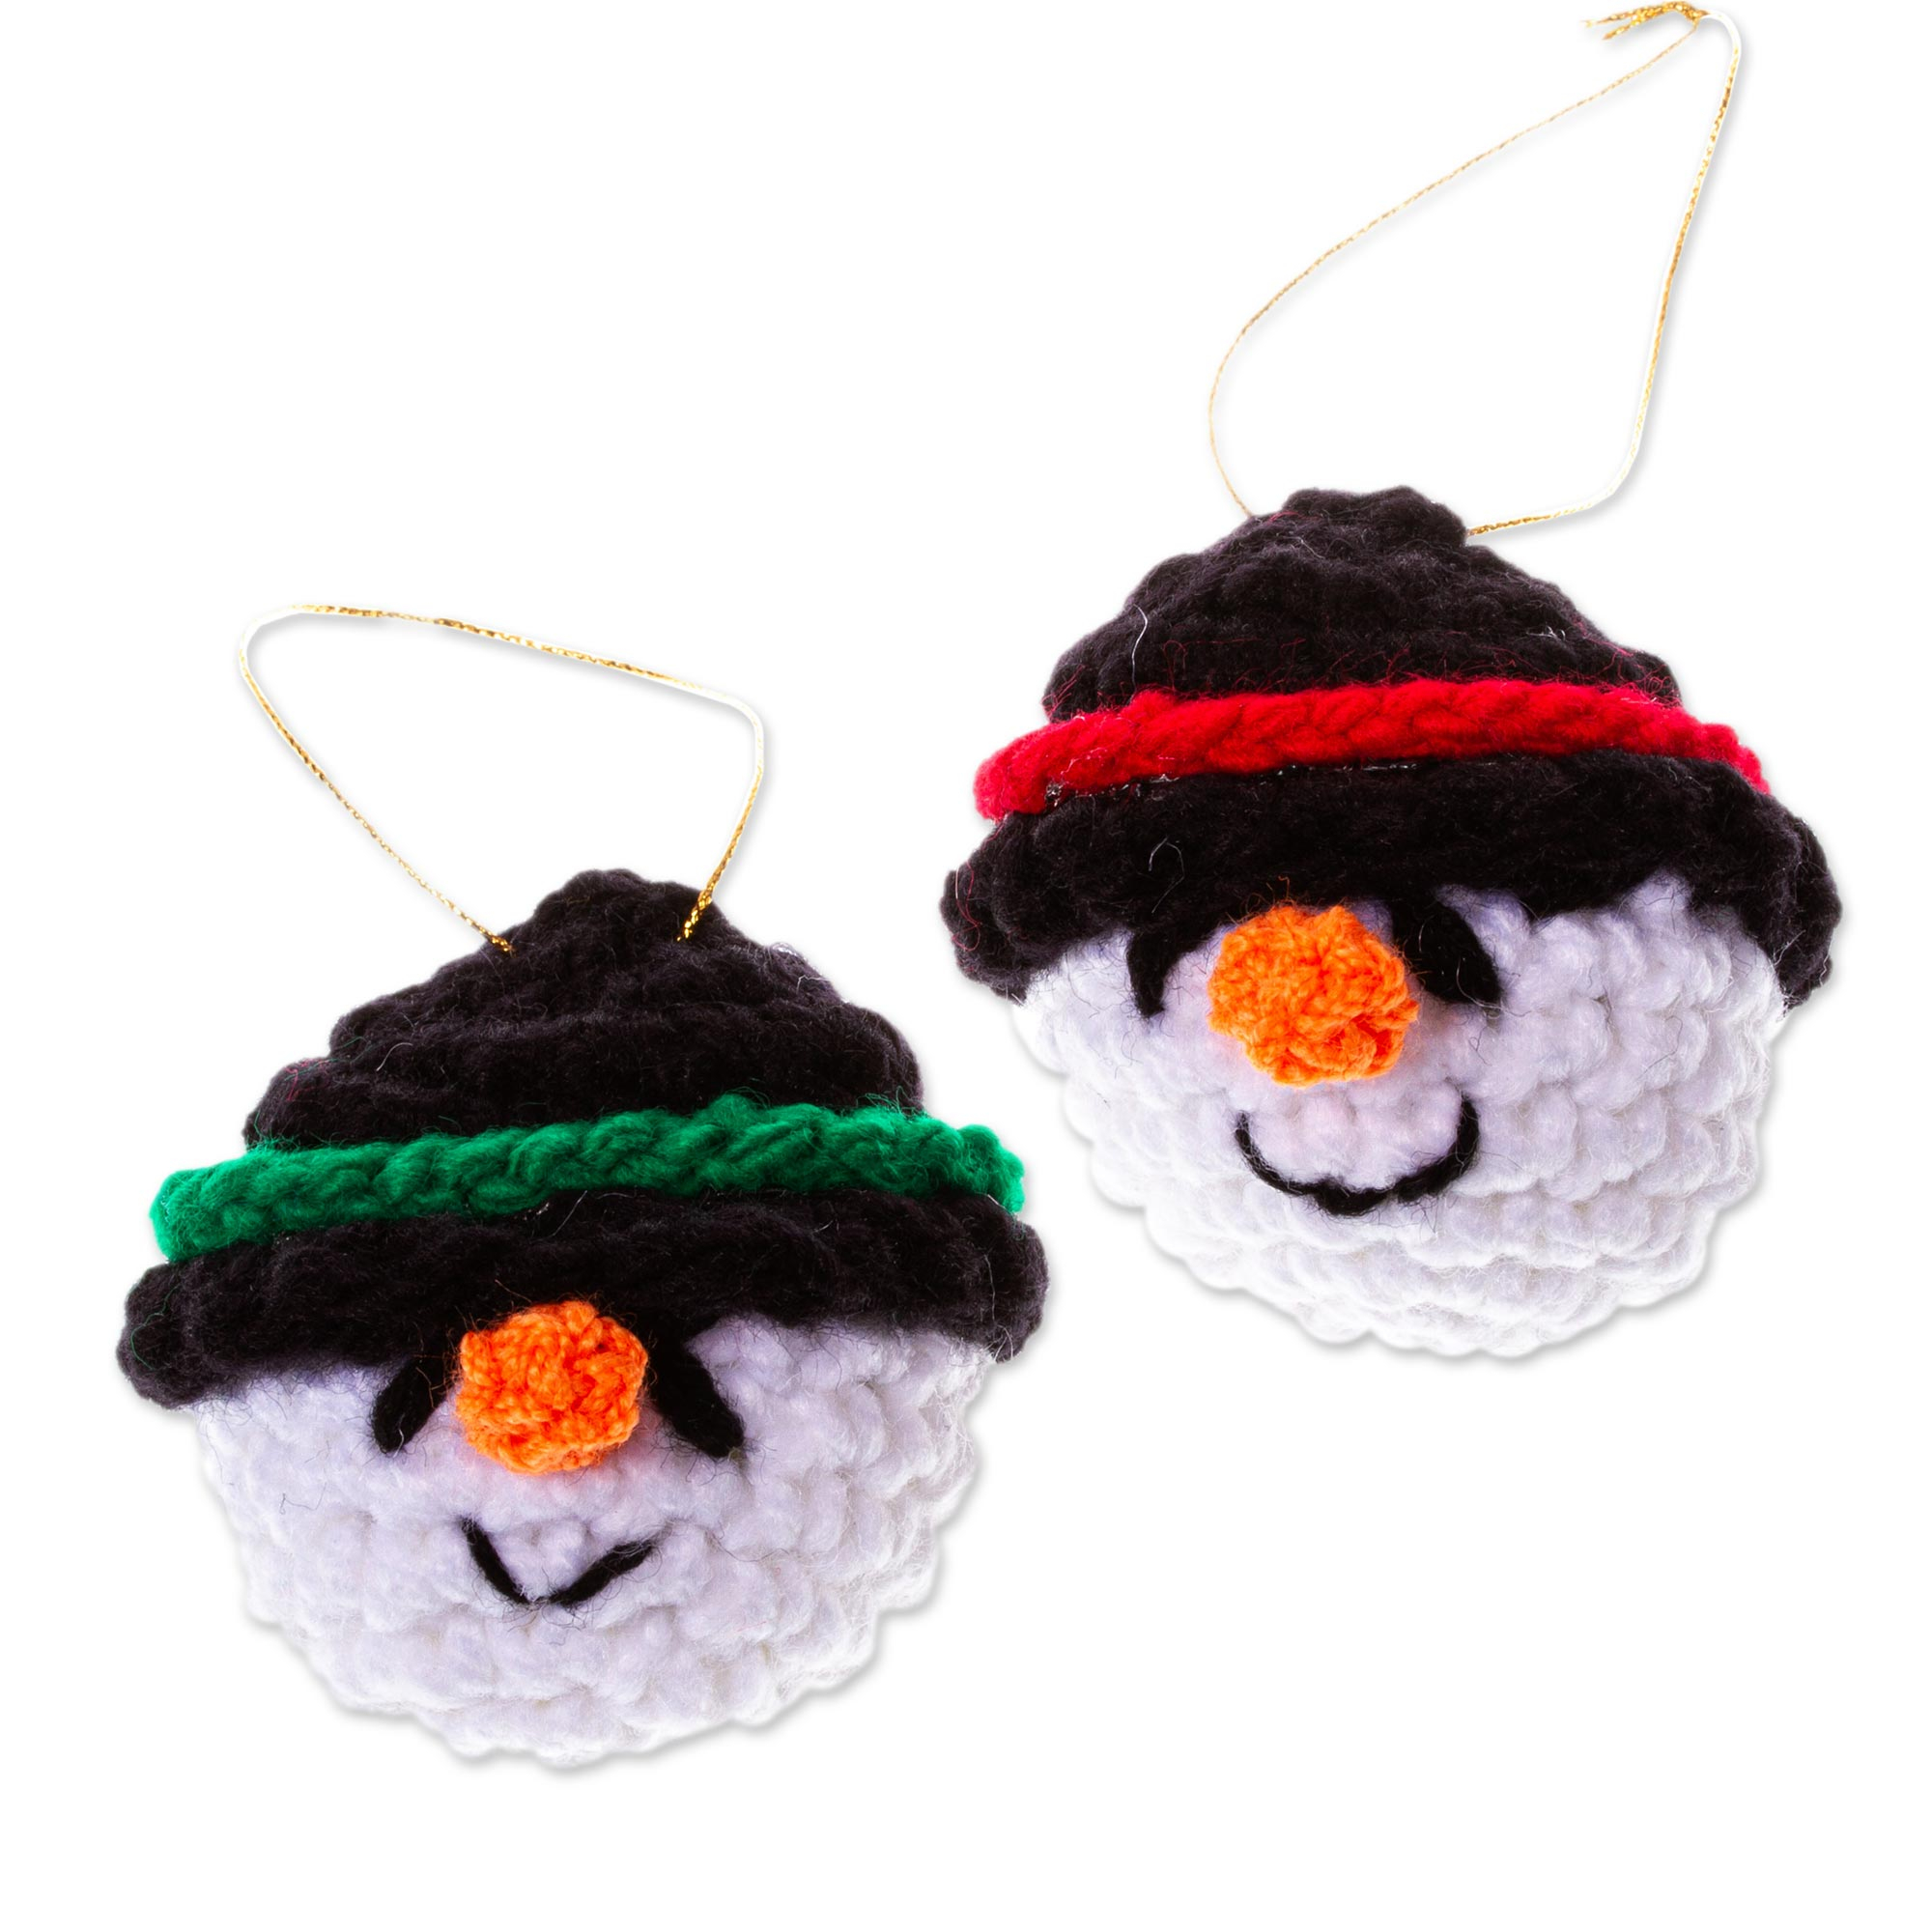 Handmade Crochet Snowman Ornament